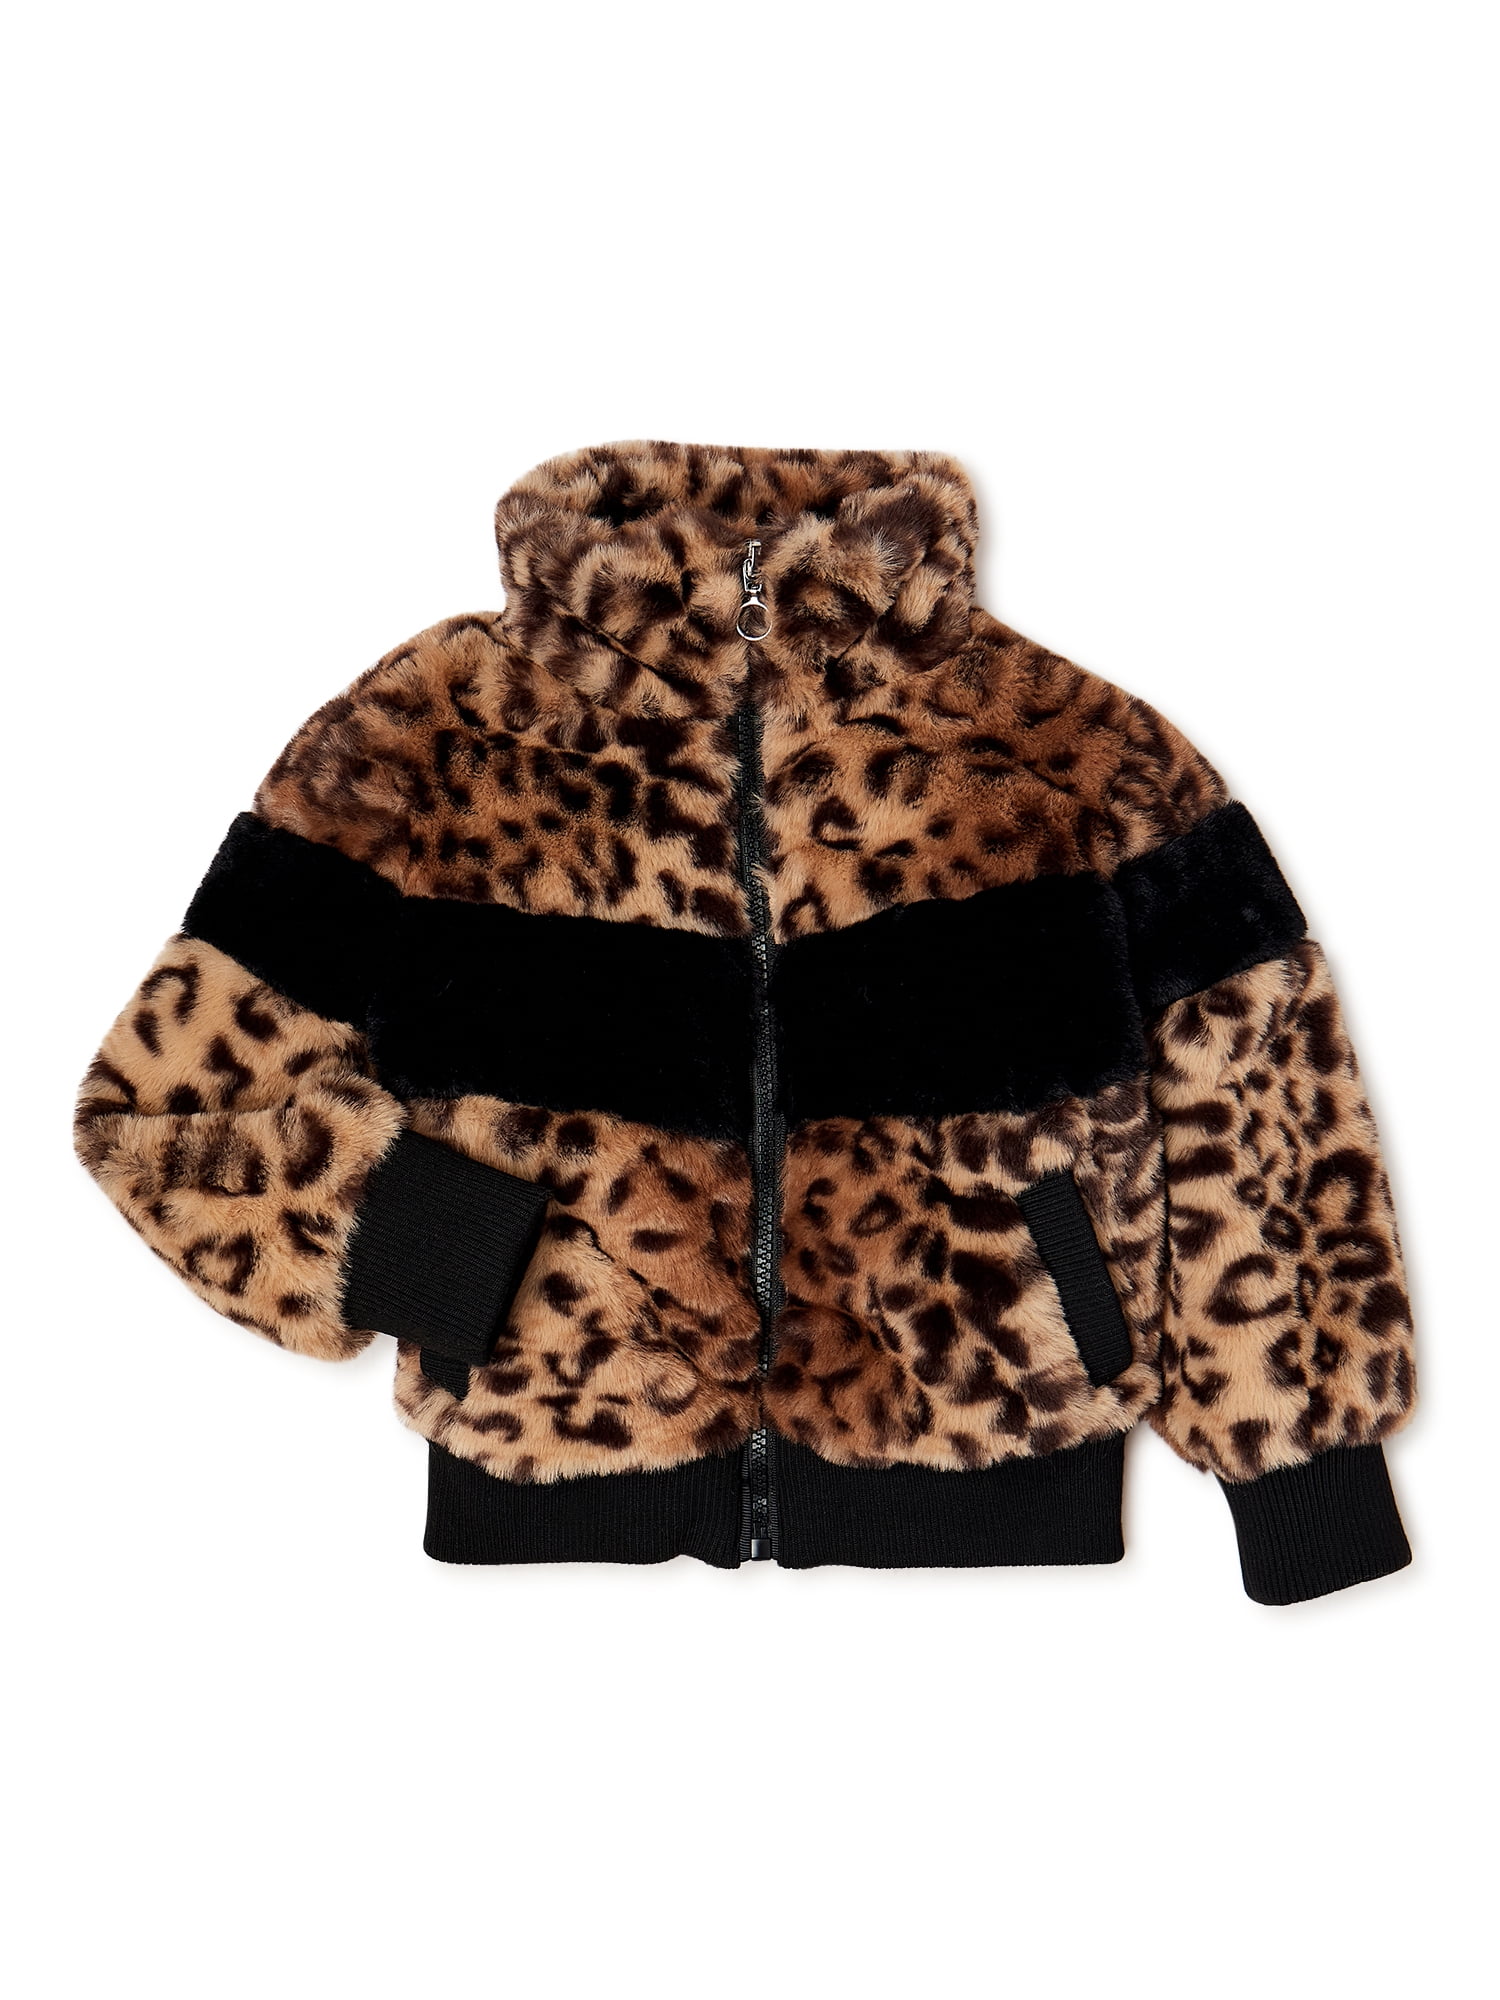 1-2Y, Beige Koly® Baby Girls Kids Toddler Floral Faux Fur Fleece Lapel Coat Winter Warm Jacket Princess Outwear 